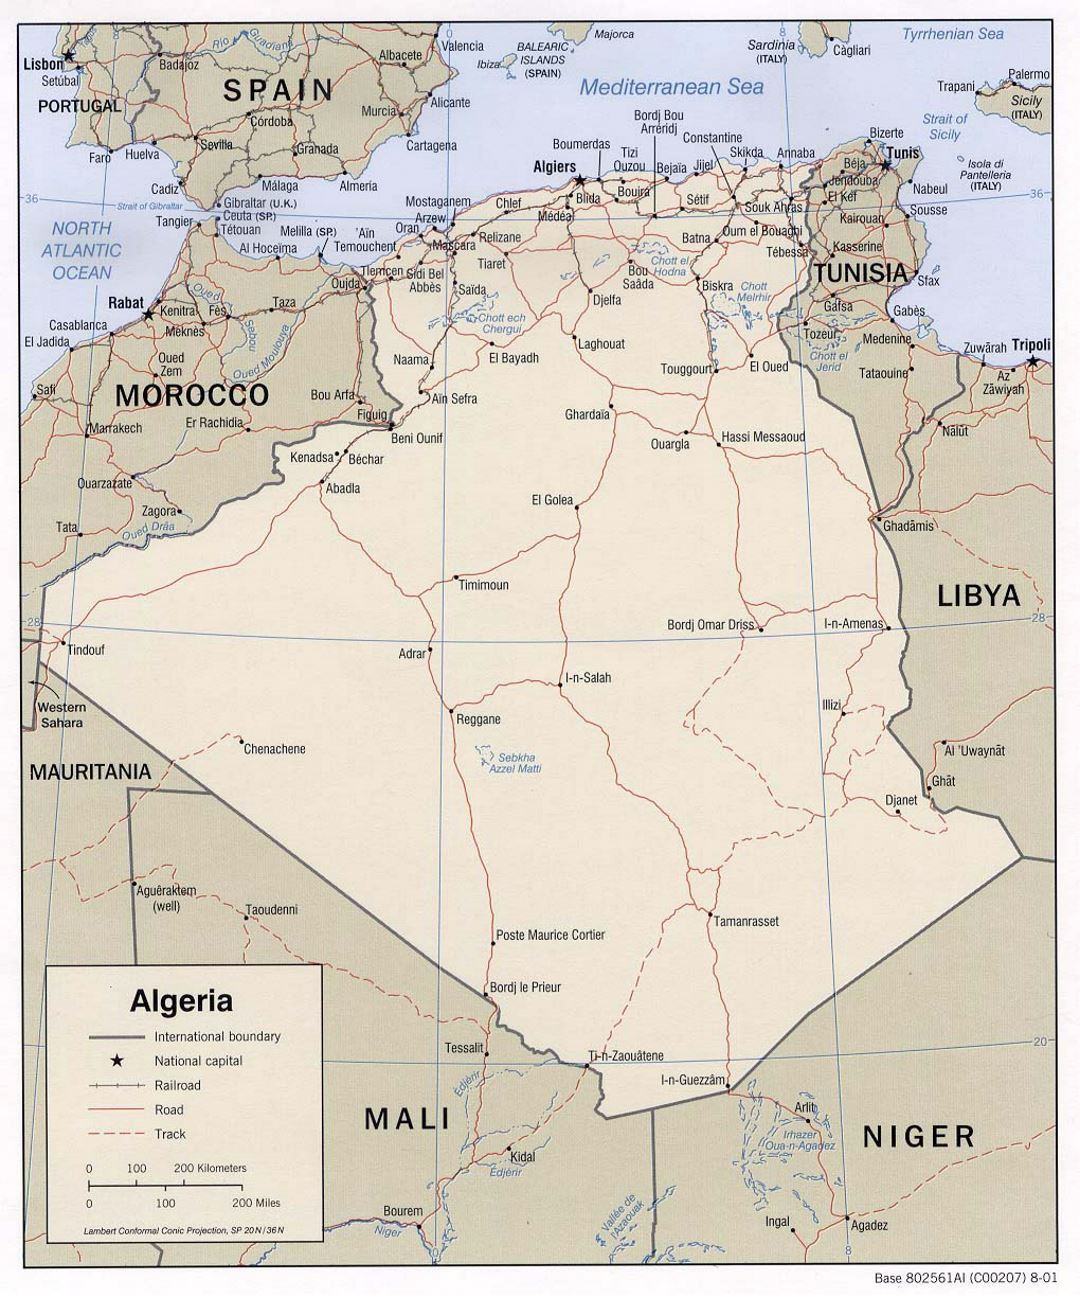 Детальная политическая карта Алжира с дорогами, железными дорогами и крупными городами - 2001